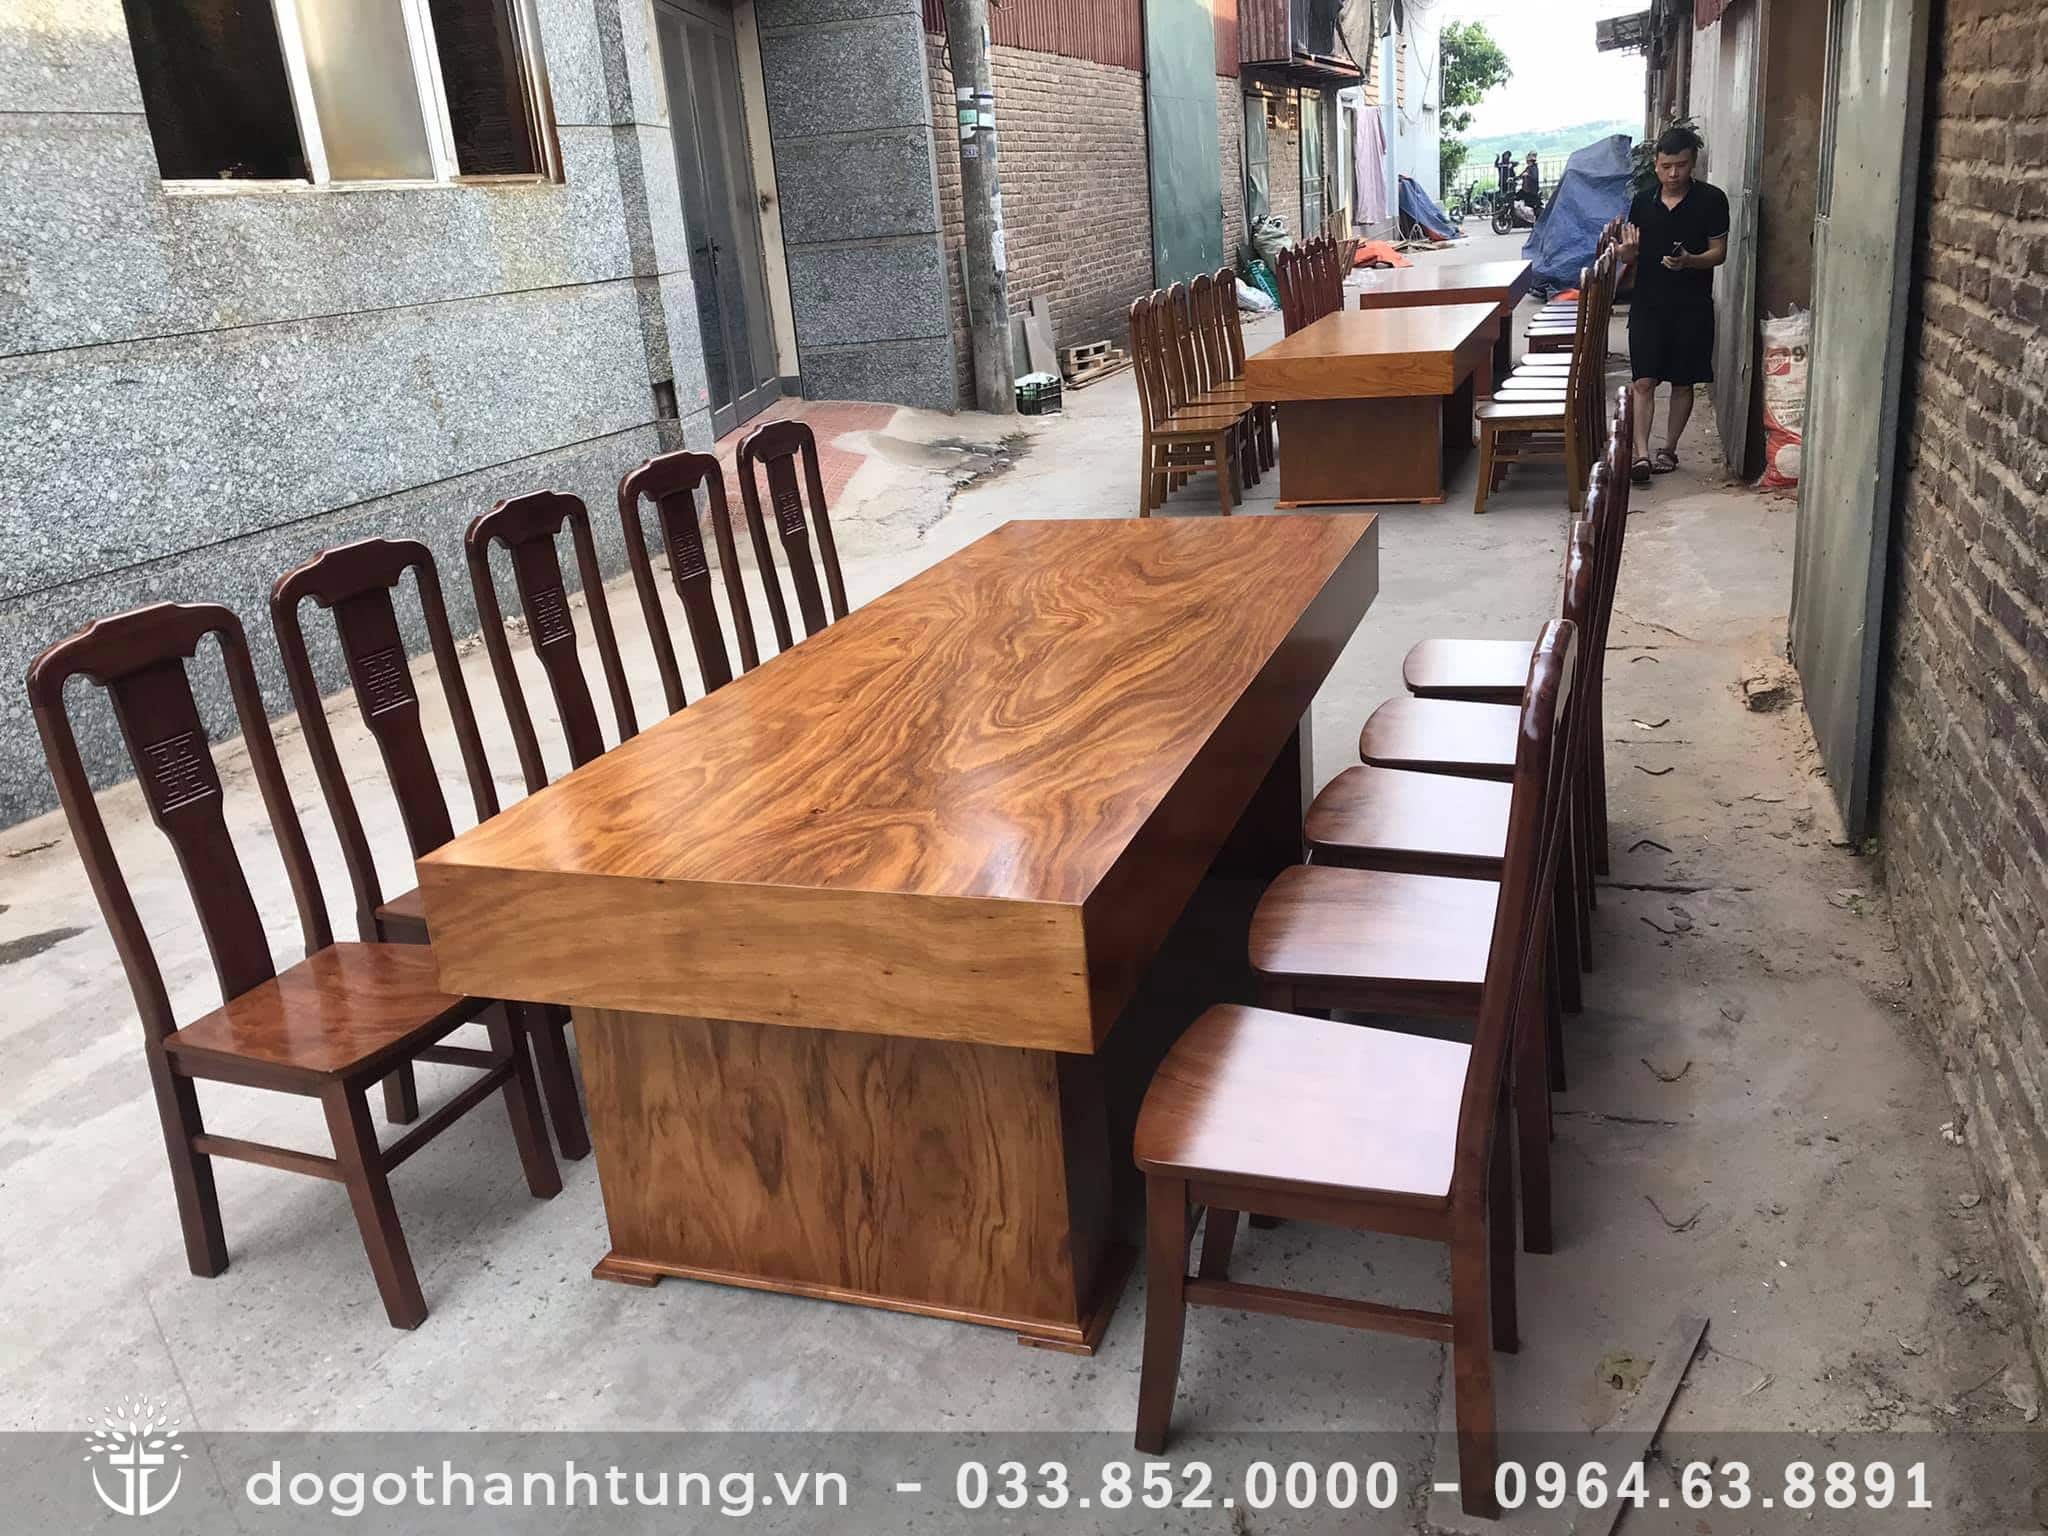 Bộ bàn ăn giả nguyên khối gỗ hương xám (10 ghế + 1 bàn)